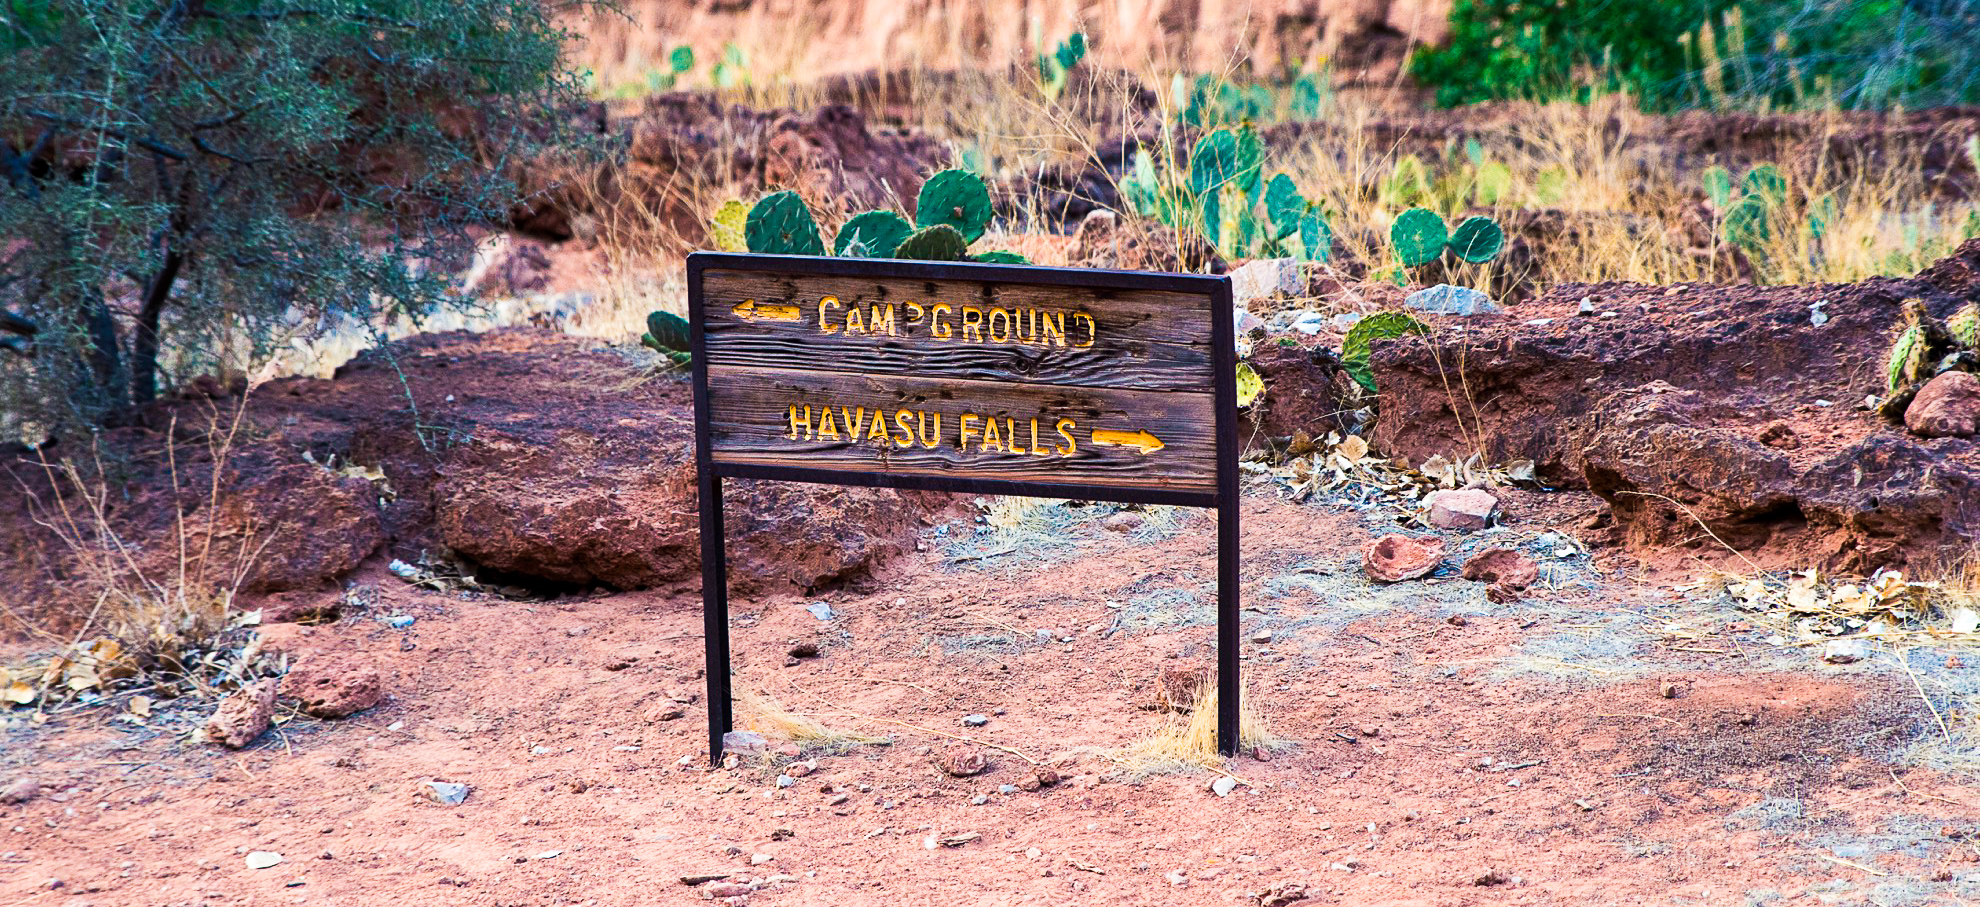 Visitar Havasu Falls: Qué saber antes de ir - 13